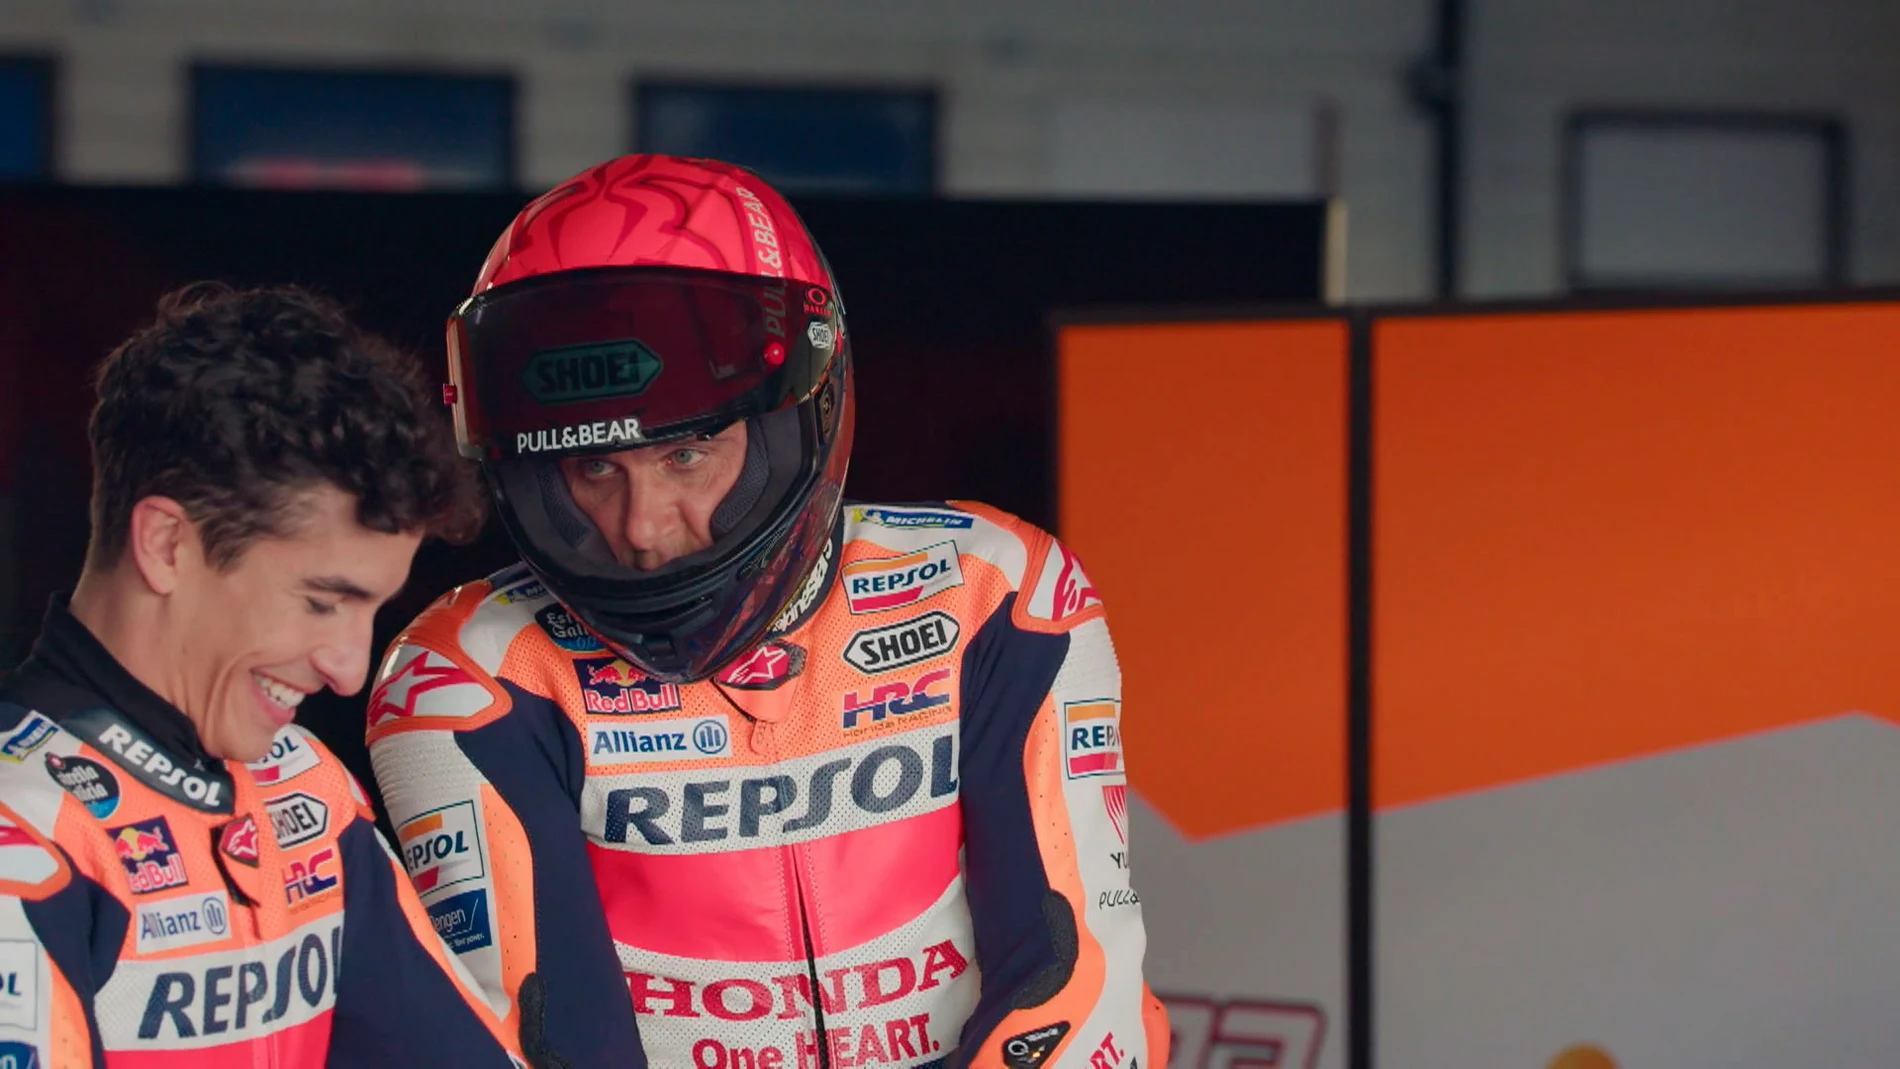 Joaquín, ante el reto de pilotar con Marc Márquez, seis veces campeón de Moto GP: “No me entra nada, estoy bien ‘cagao’” 